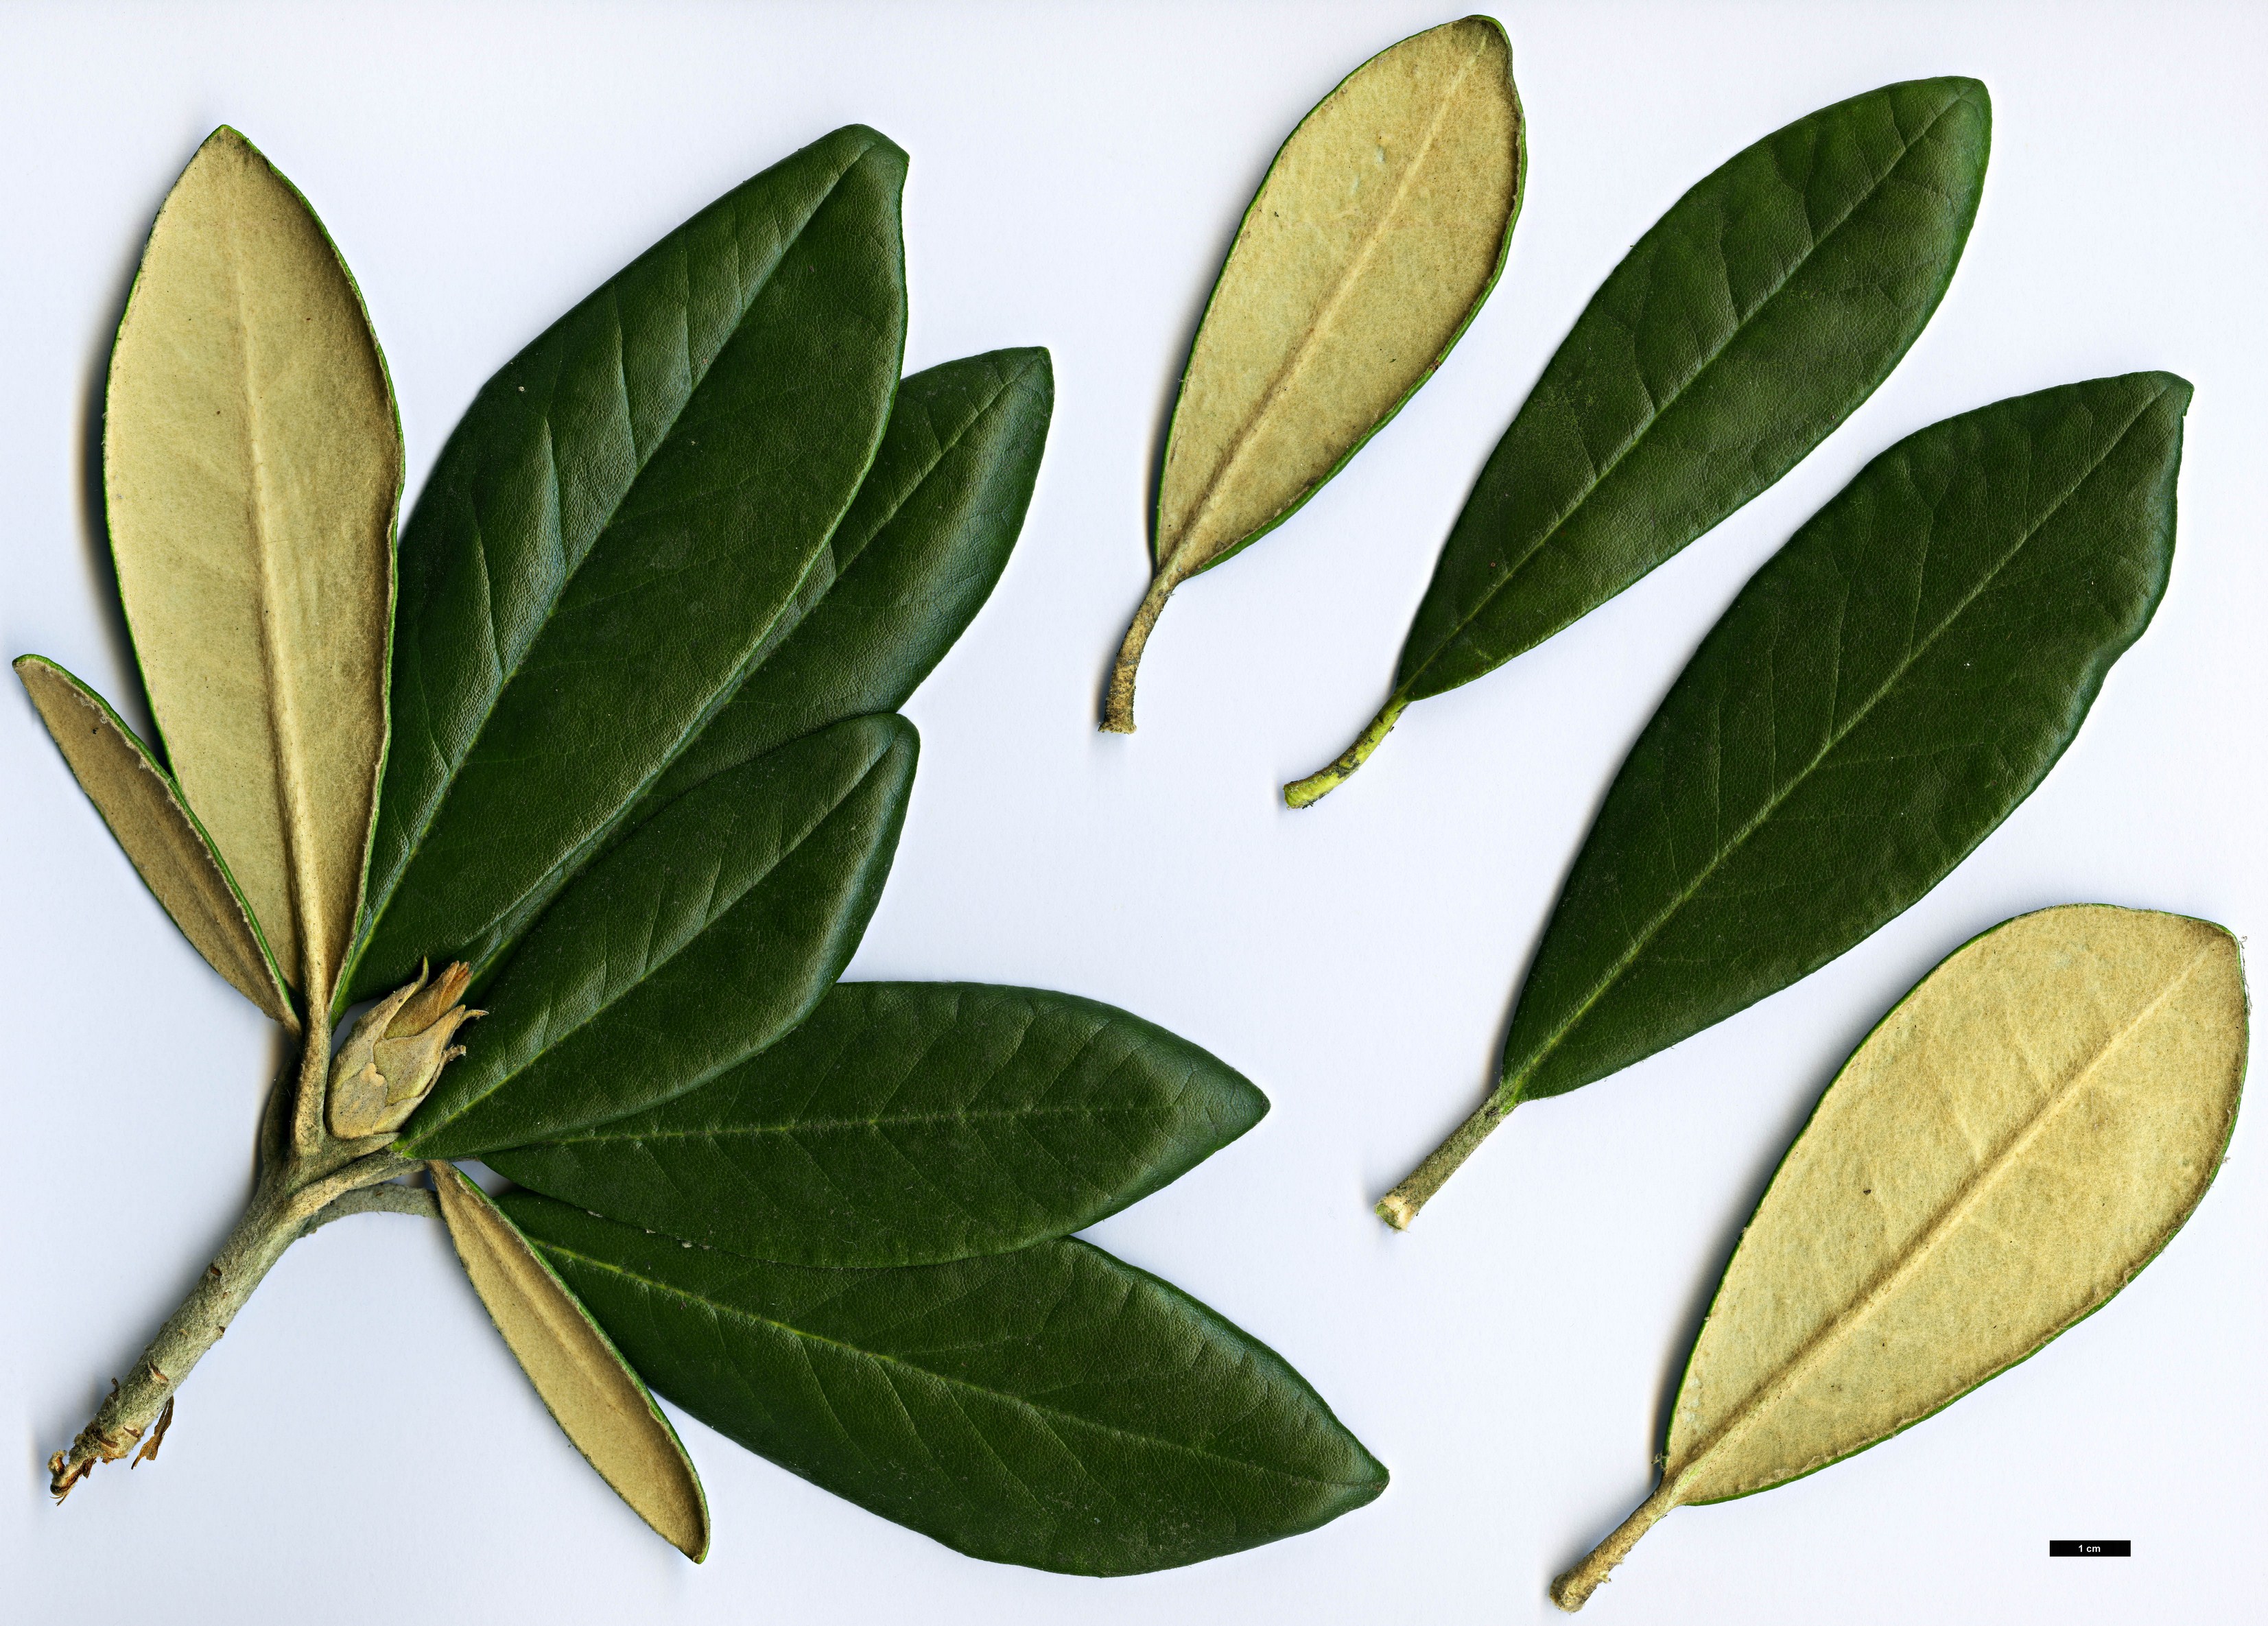 High resolution image: Family: Ericaceae - Genus: Rhododendron - Taxon: smirnowii